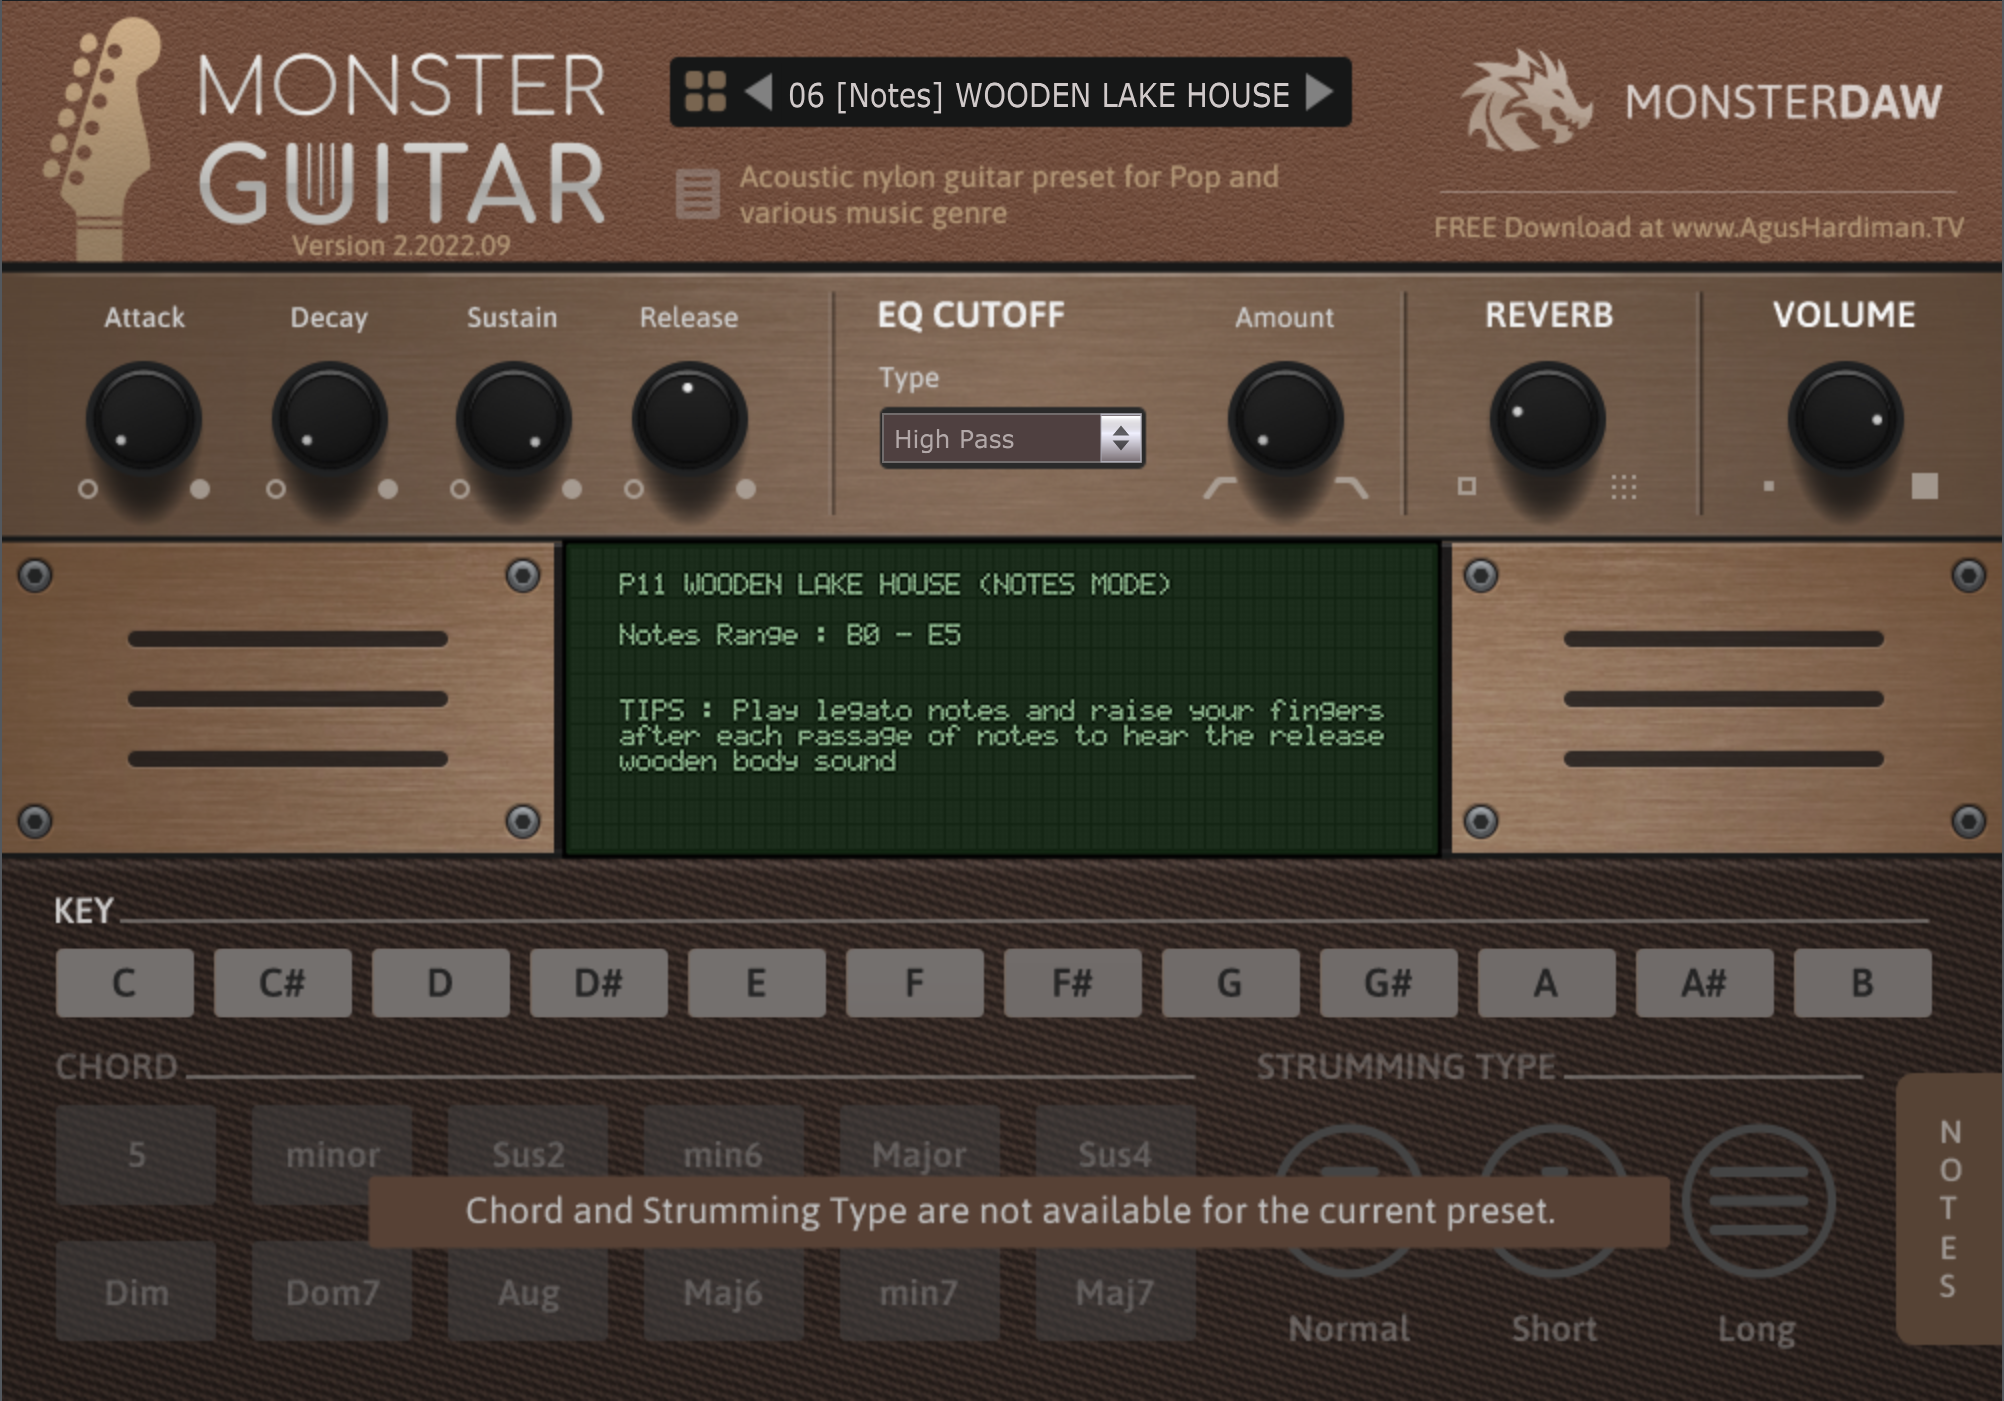 Monster Guitar v2.2022.09